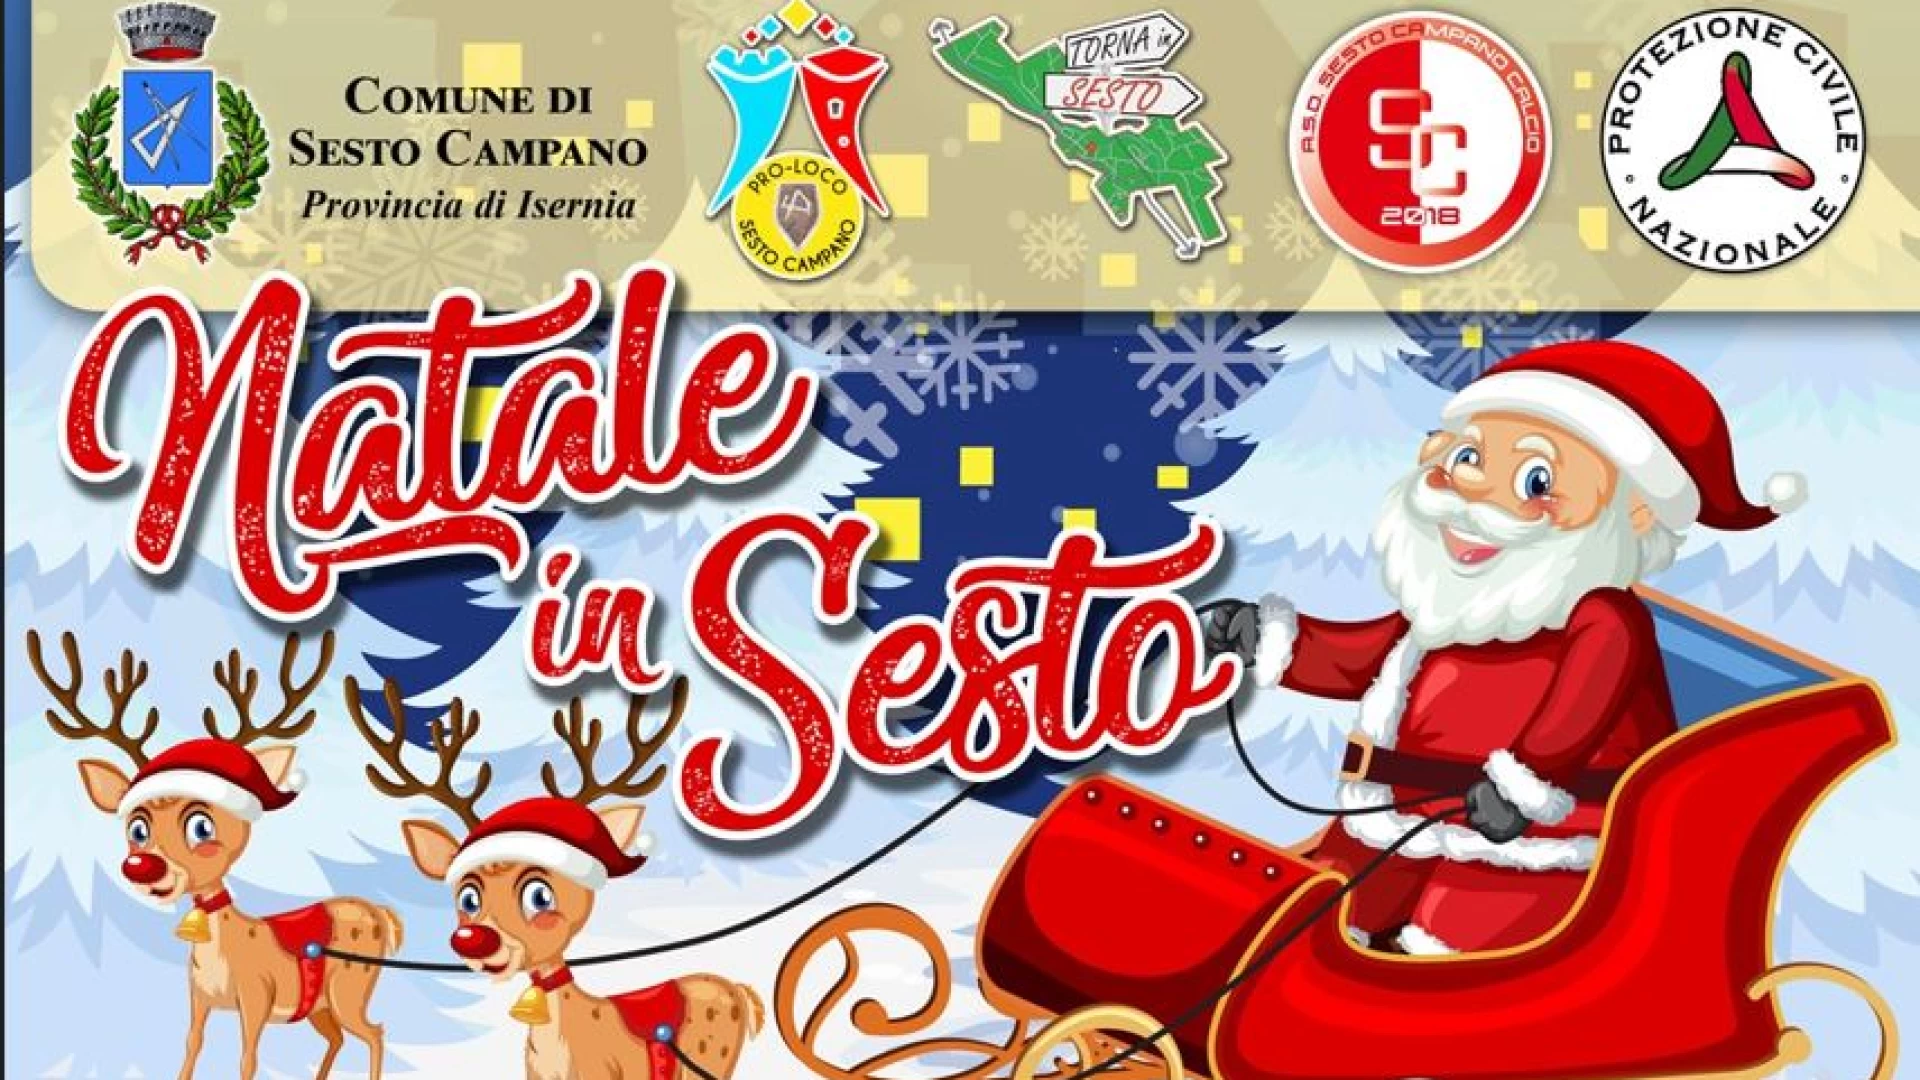 Natale a Sesto Campano. Il programma completo degli eventi del periodo natalizio.